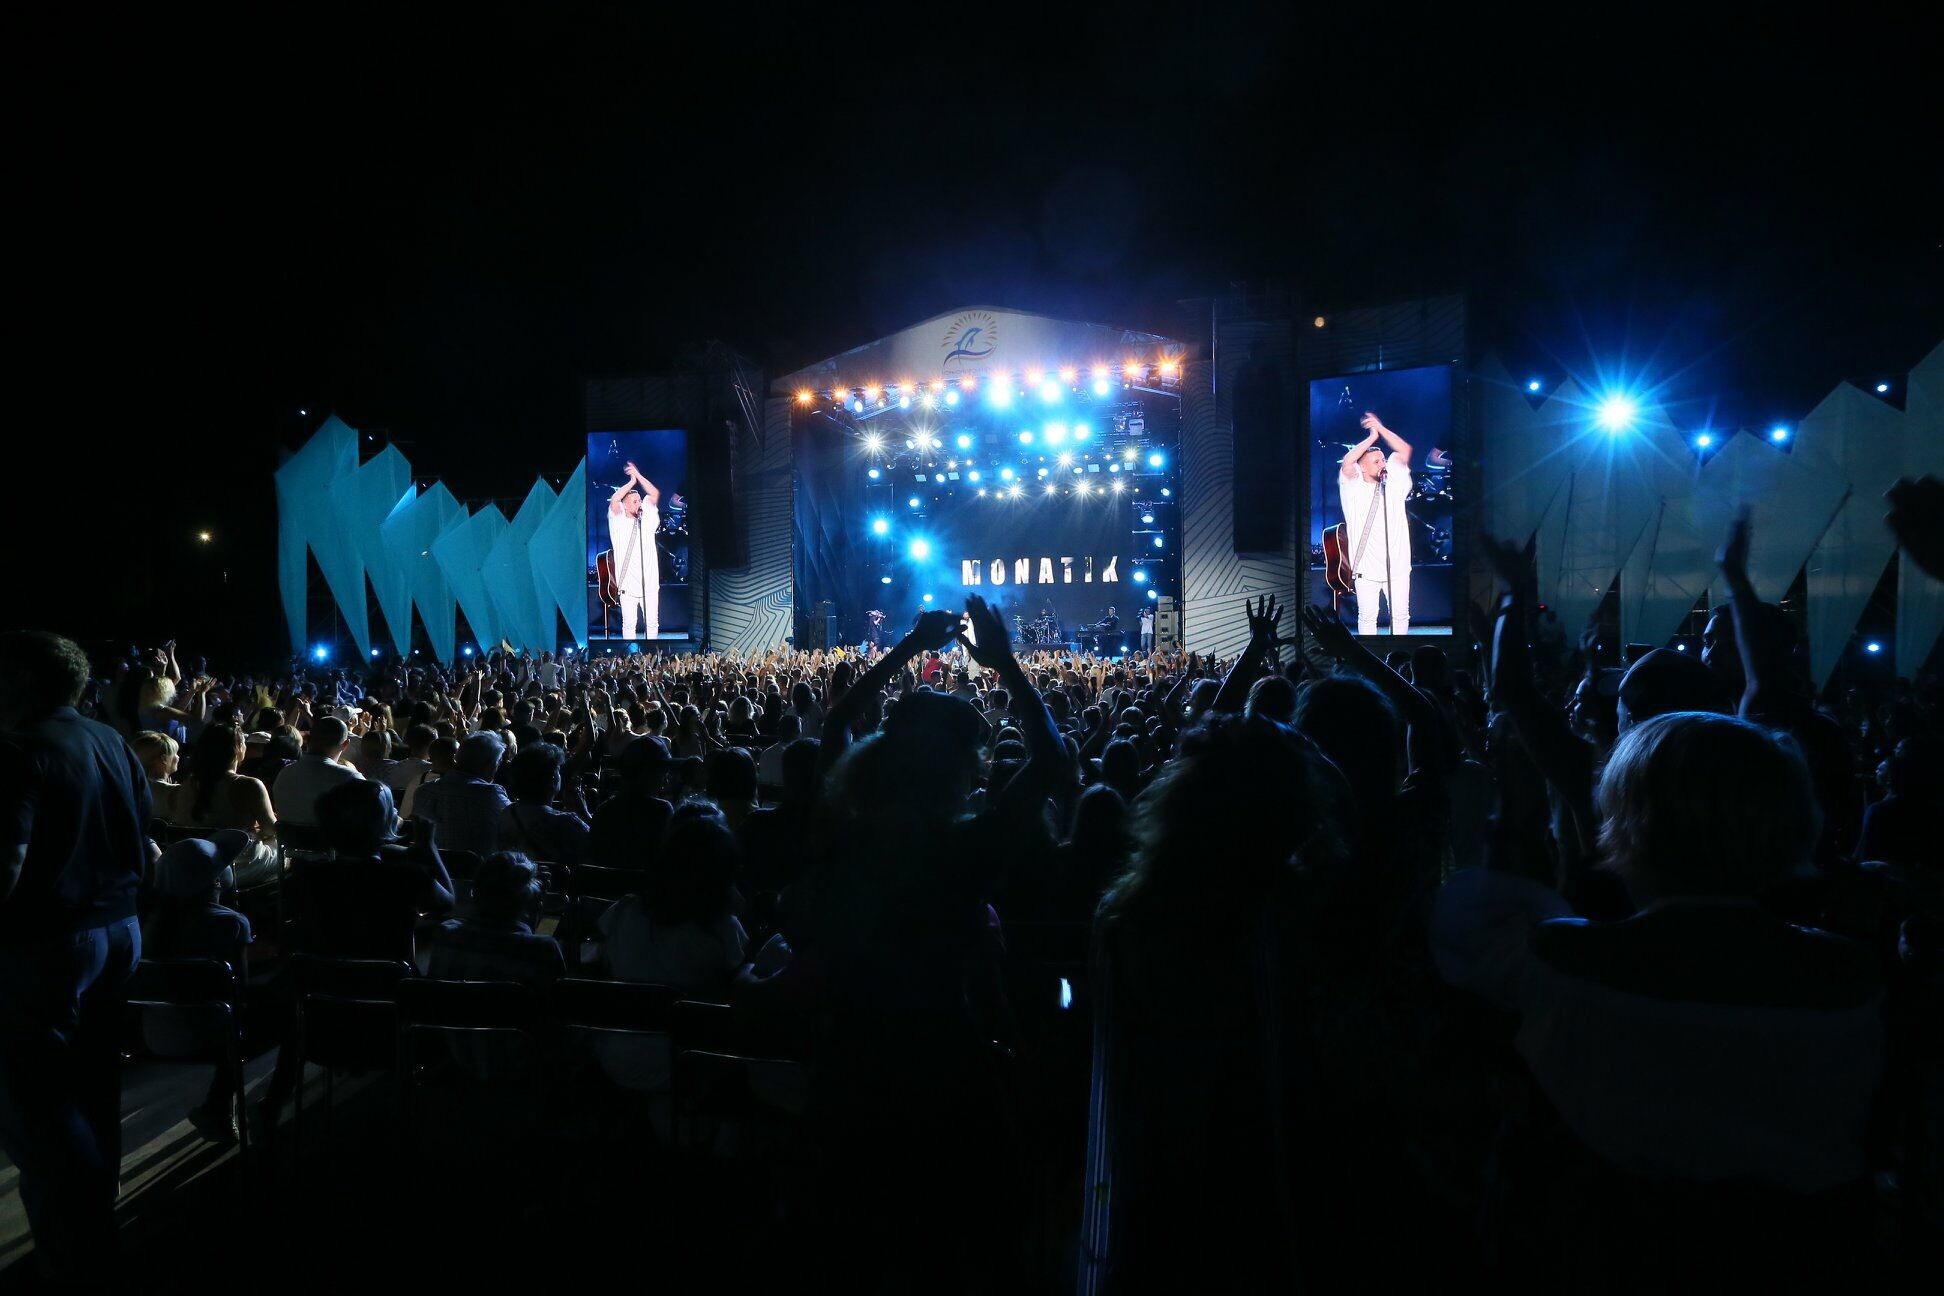 "Я не забуду этот вечер никогда": фанаты в восторге от выступления MONATIK на "Черноморских играх 2018" 